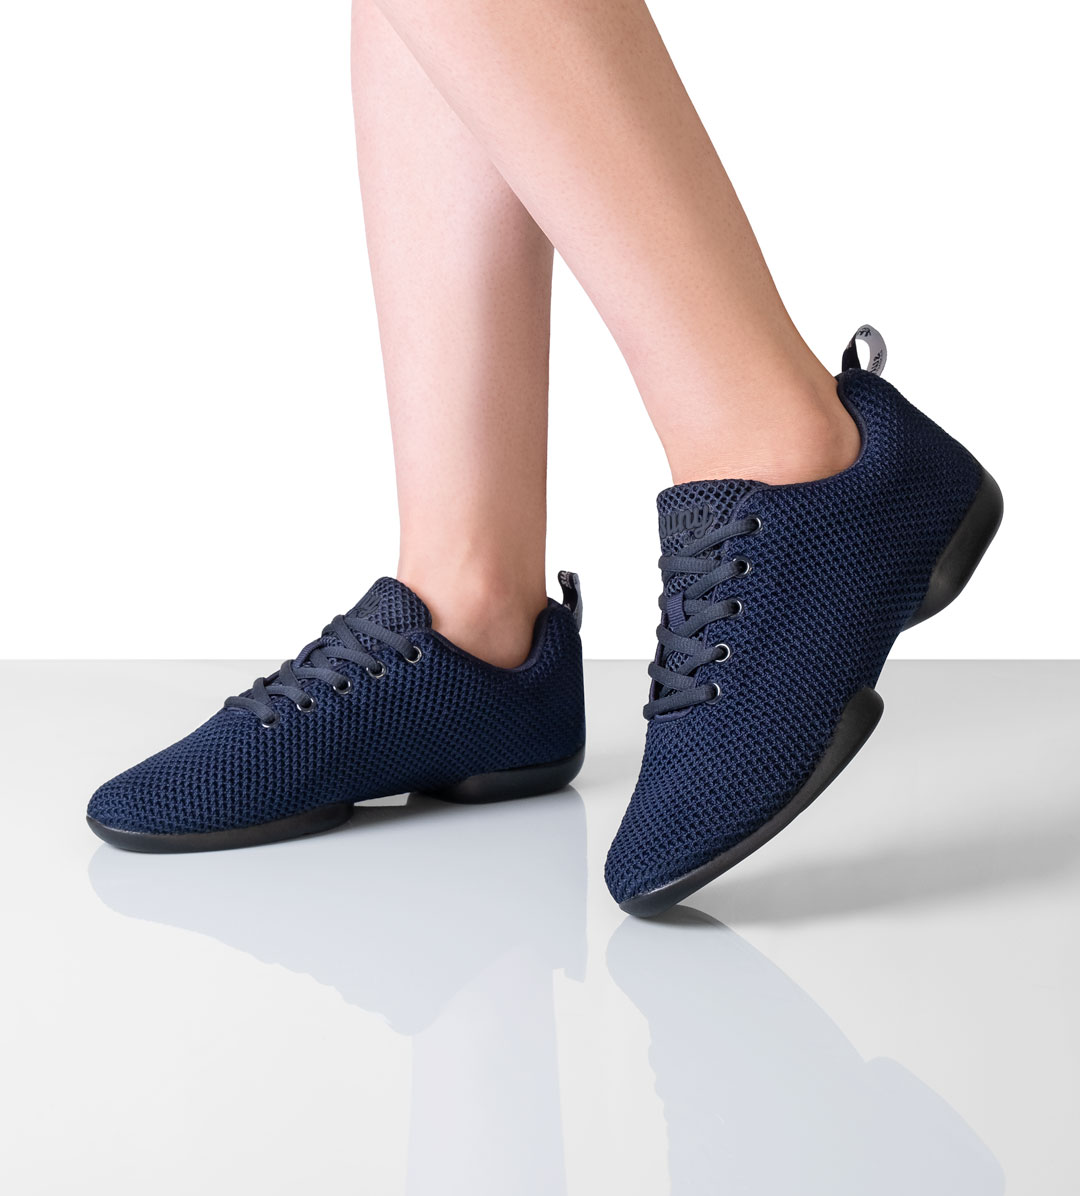 Damen Sneaker 170 in Dunkelblau von Suny by Anna Kern, aus feinem Knitting Material mit geteilter Sohle, ideal zum Tanzen auf allen Böden.